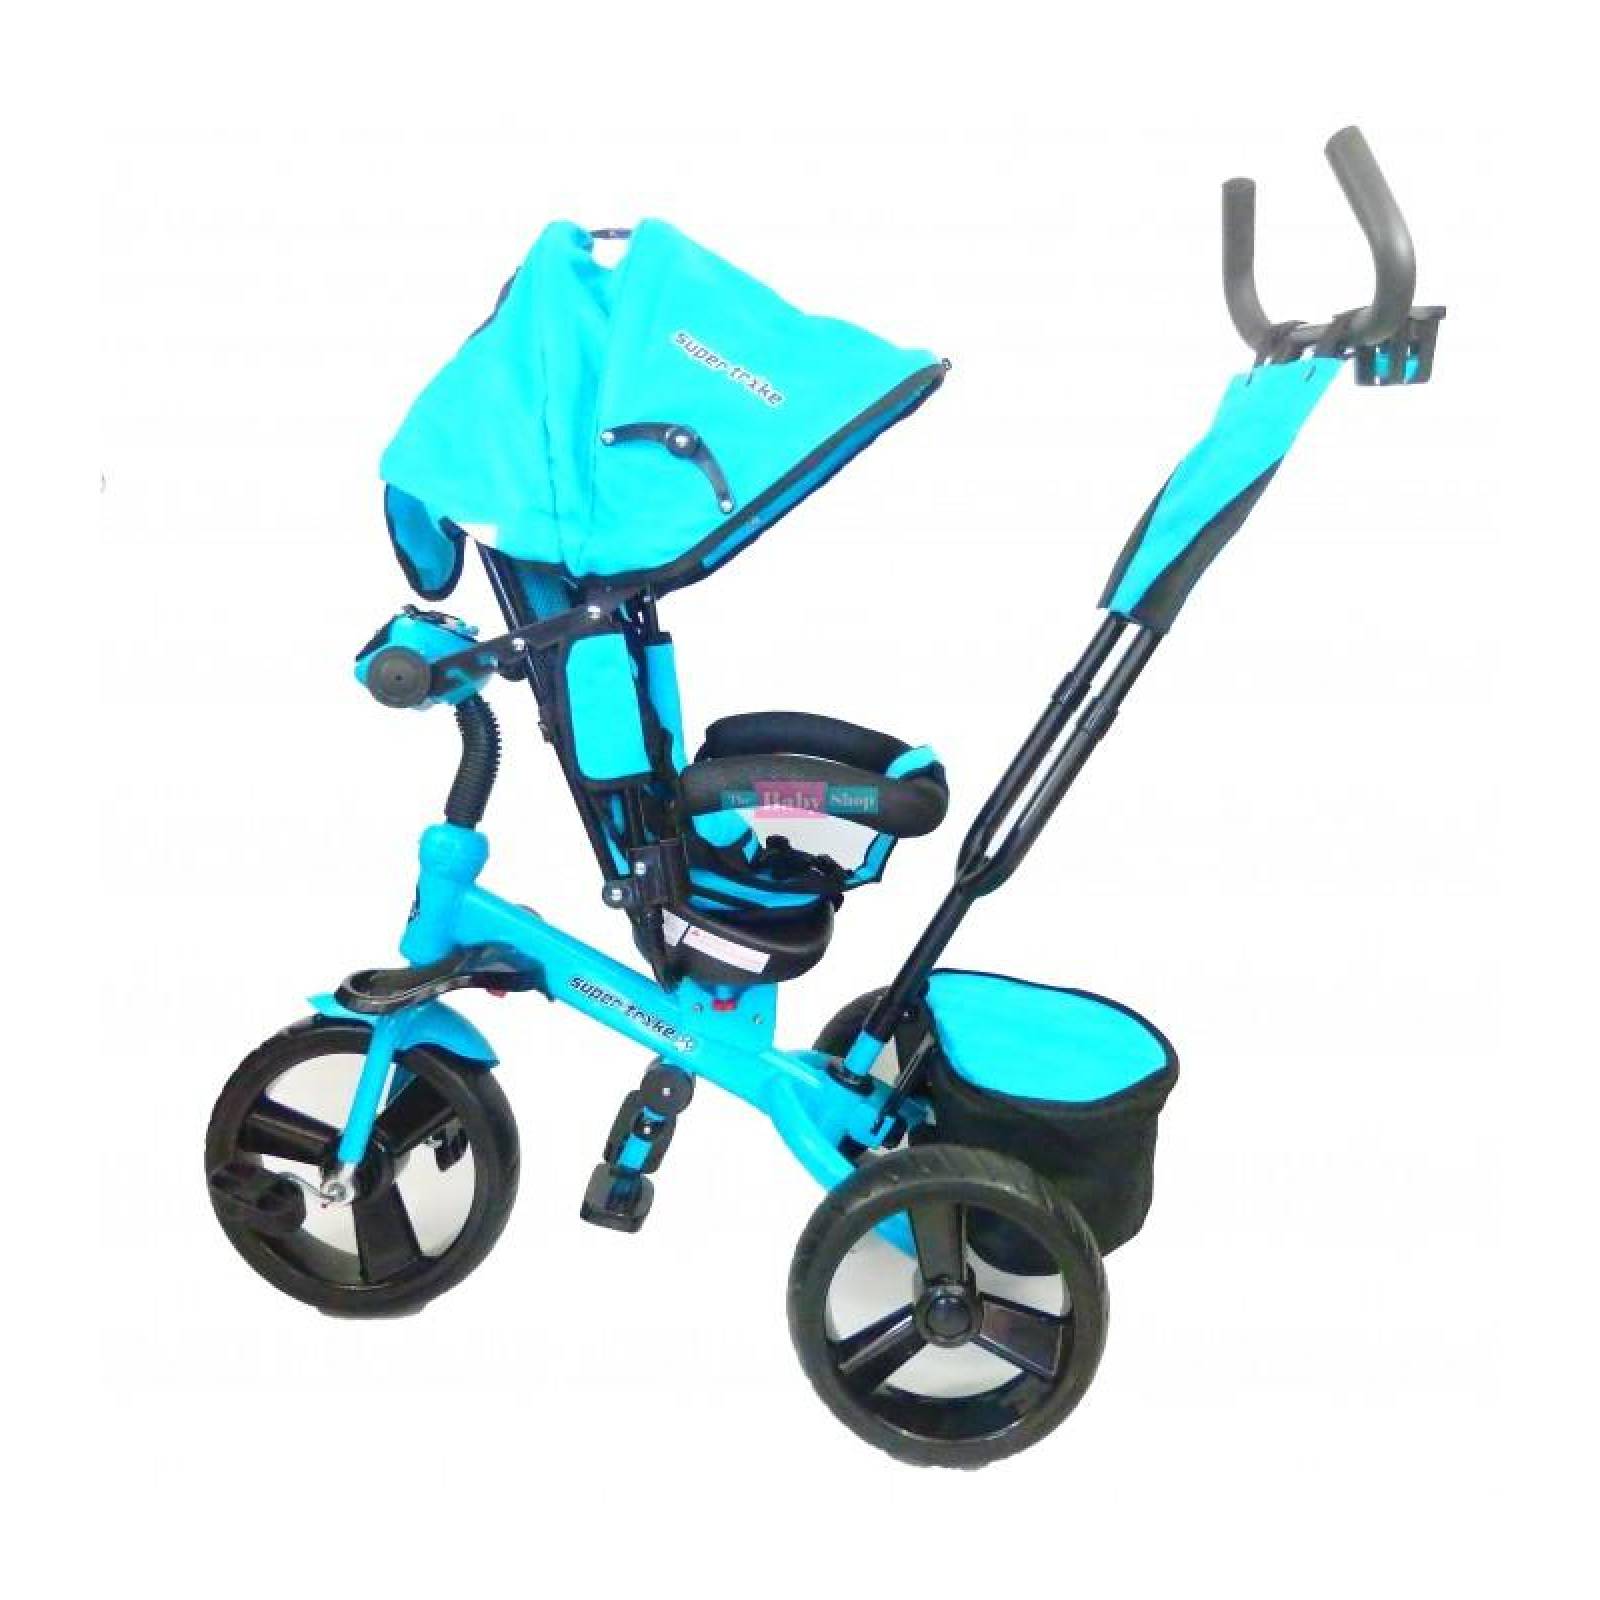 Triciclo para Bebe Niños 6 en 1 6 meses a 5 años rojo rosa y azul 